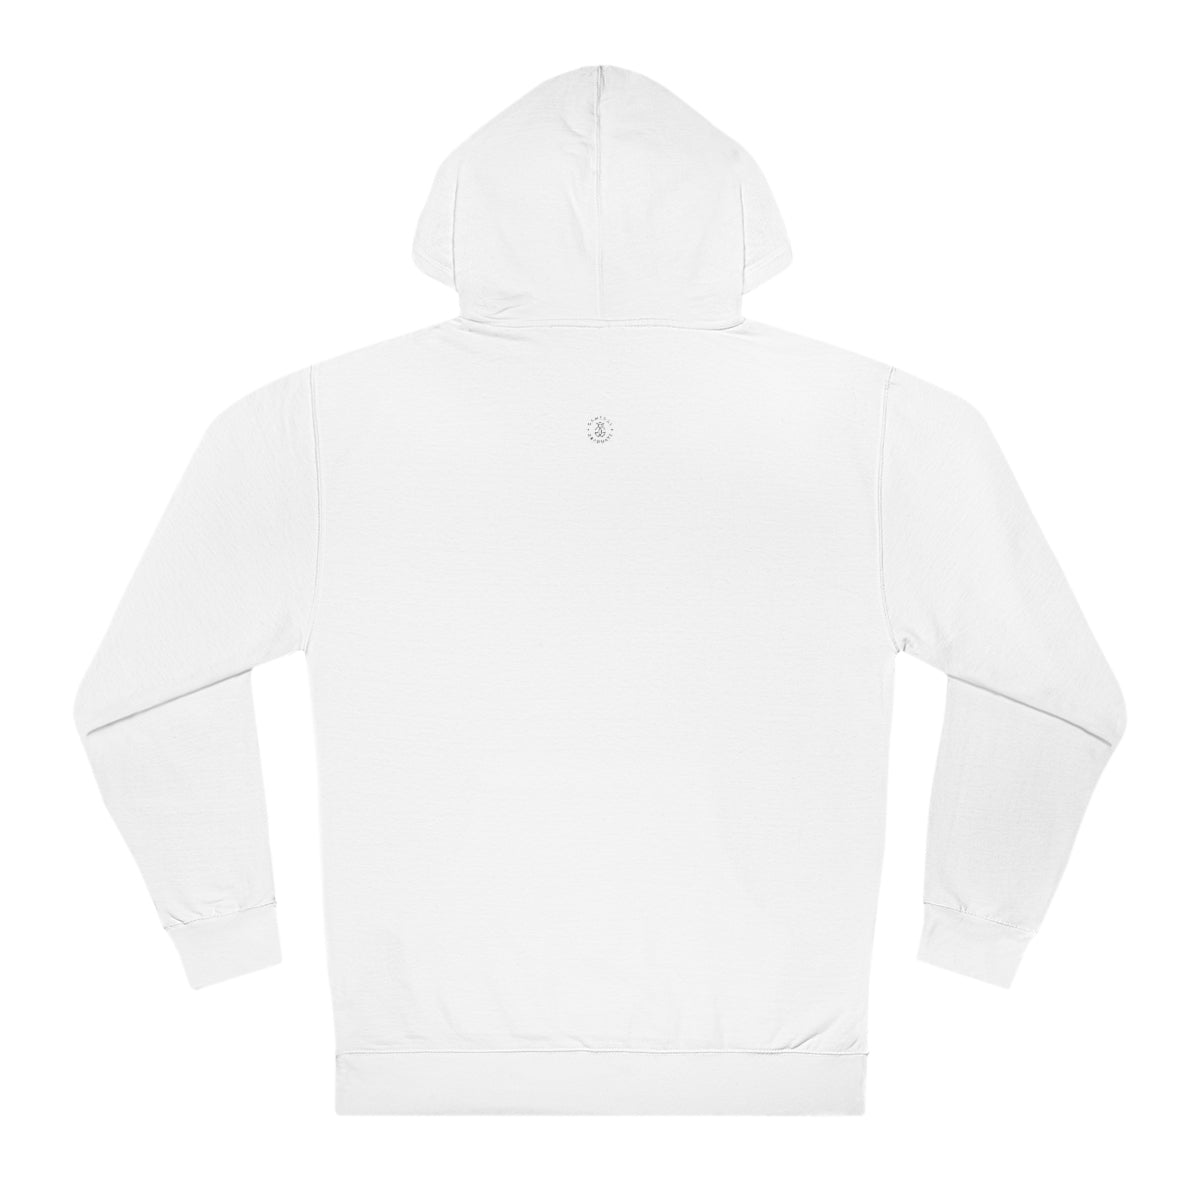 Florida Hooded Sweatshirt - GG - ITC